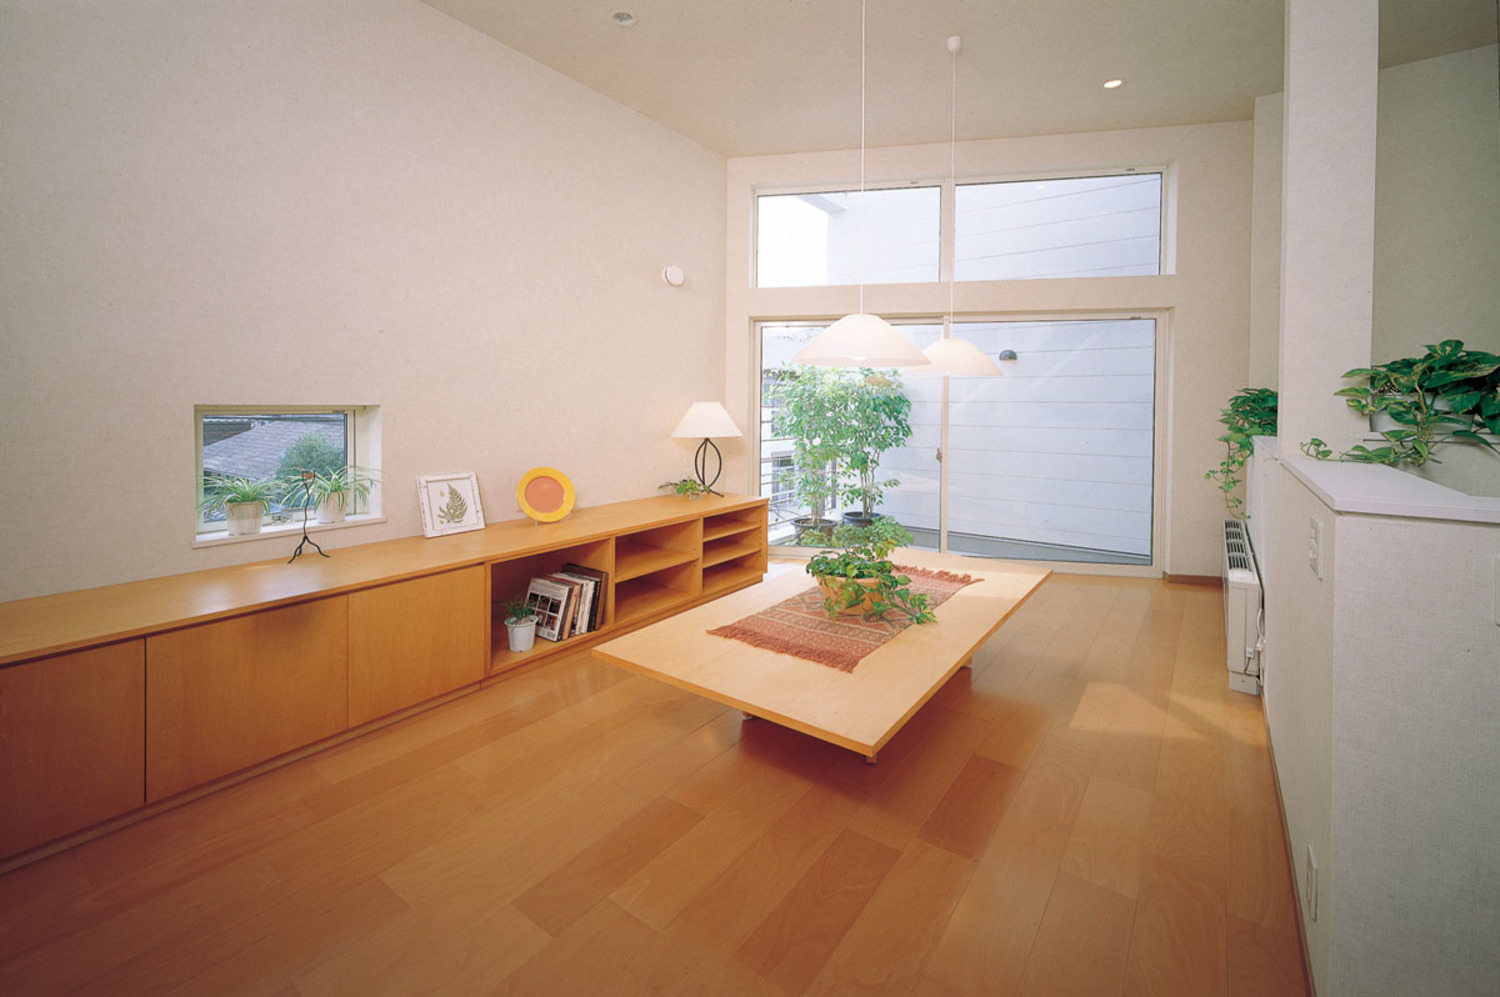 床と家具の色合いがとても優しいリビング空間